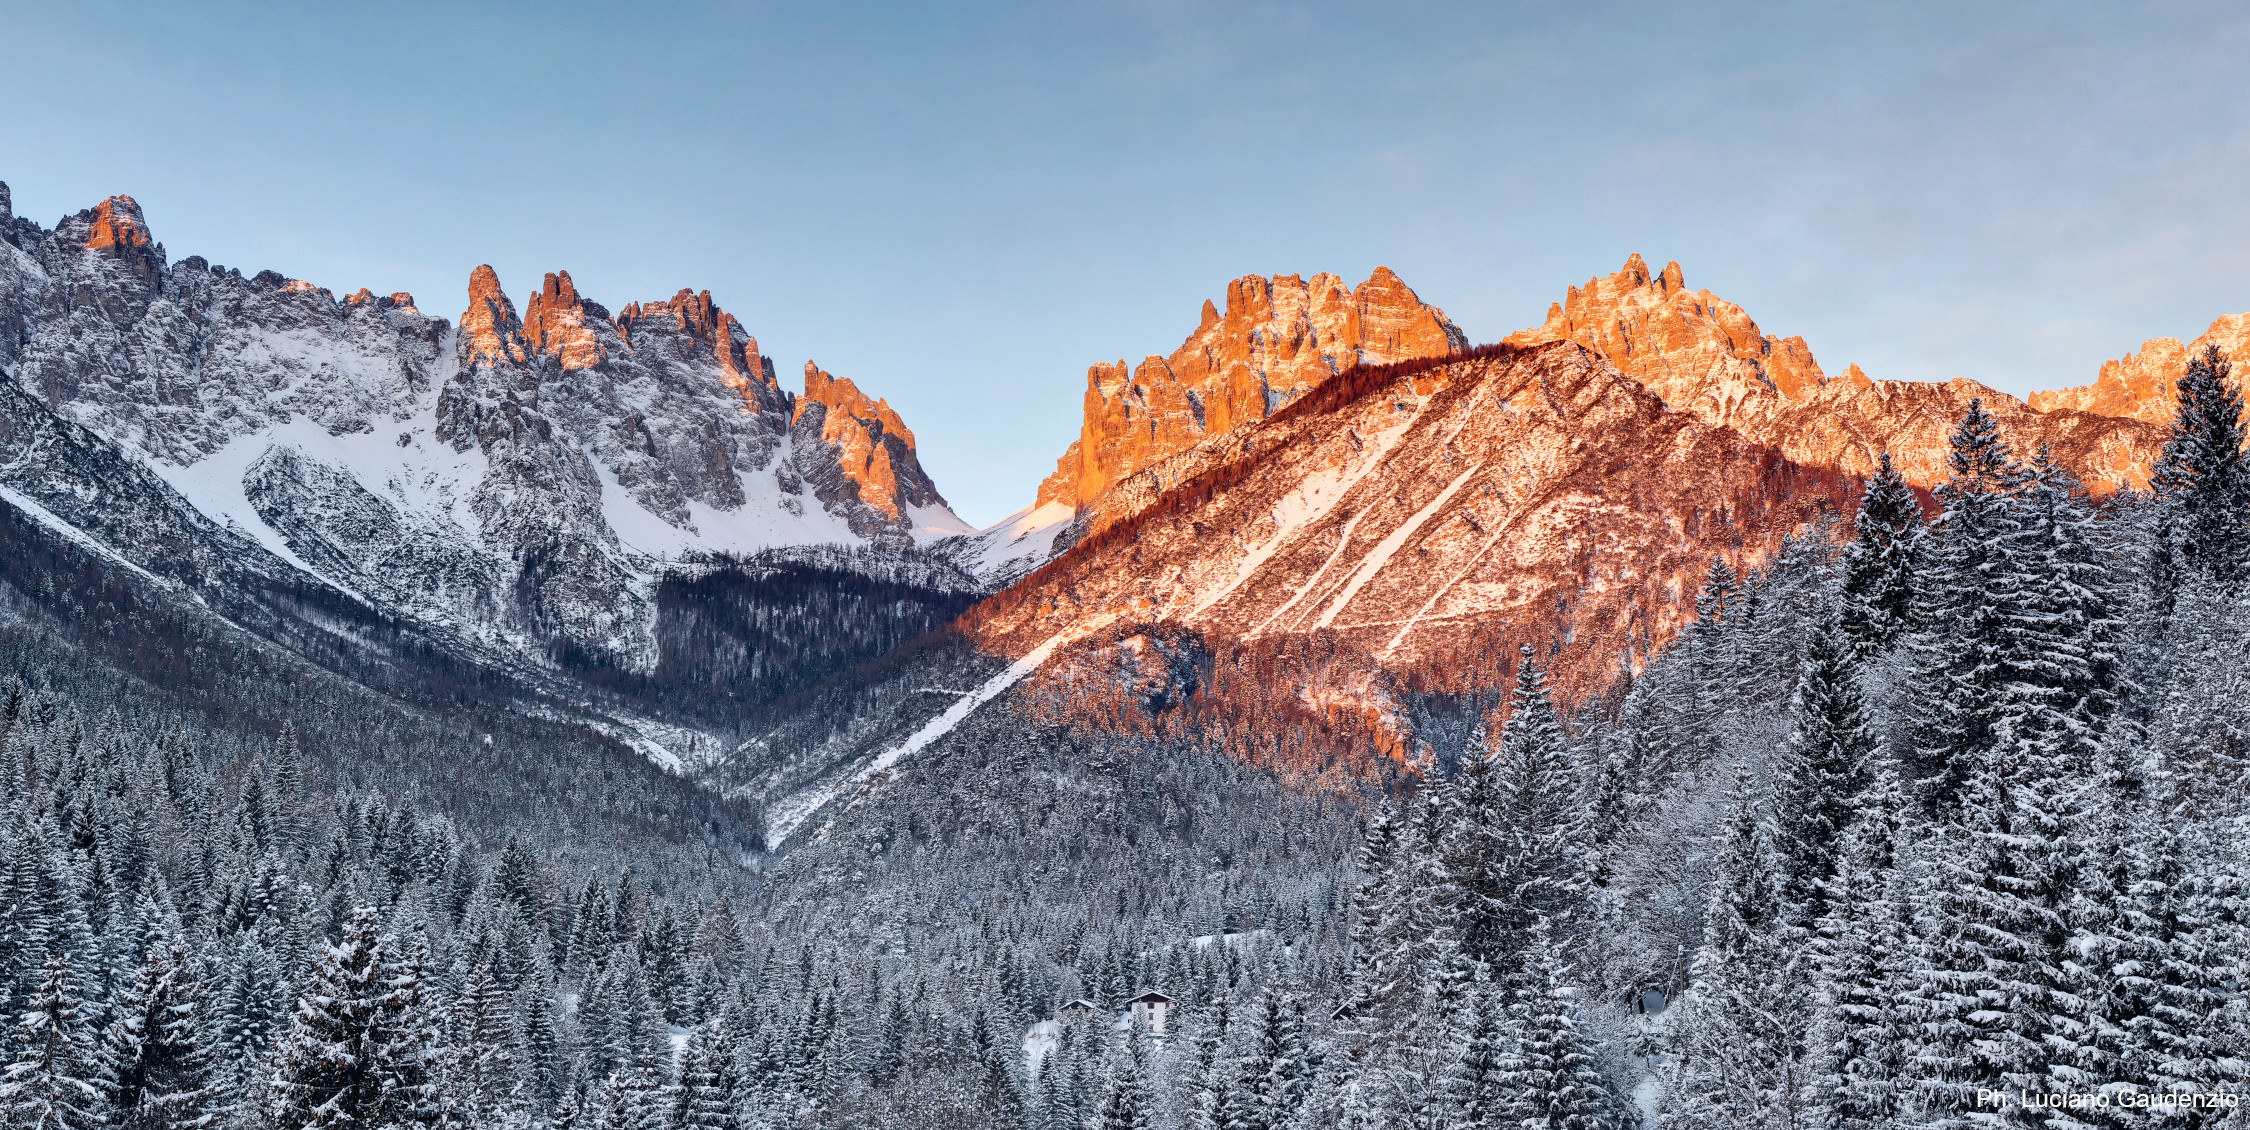 I nostri auguri con questa immagine della Vallata di Giaf, Dolomiti Friulane. Ph. Luciano Gaudenzio